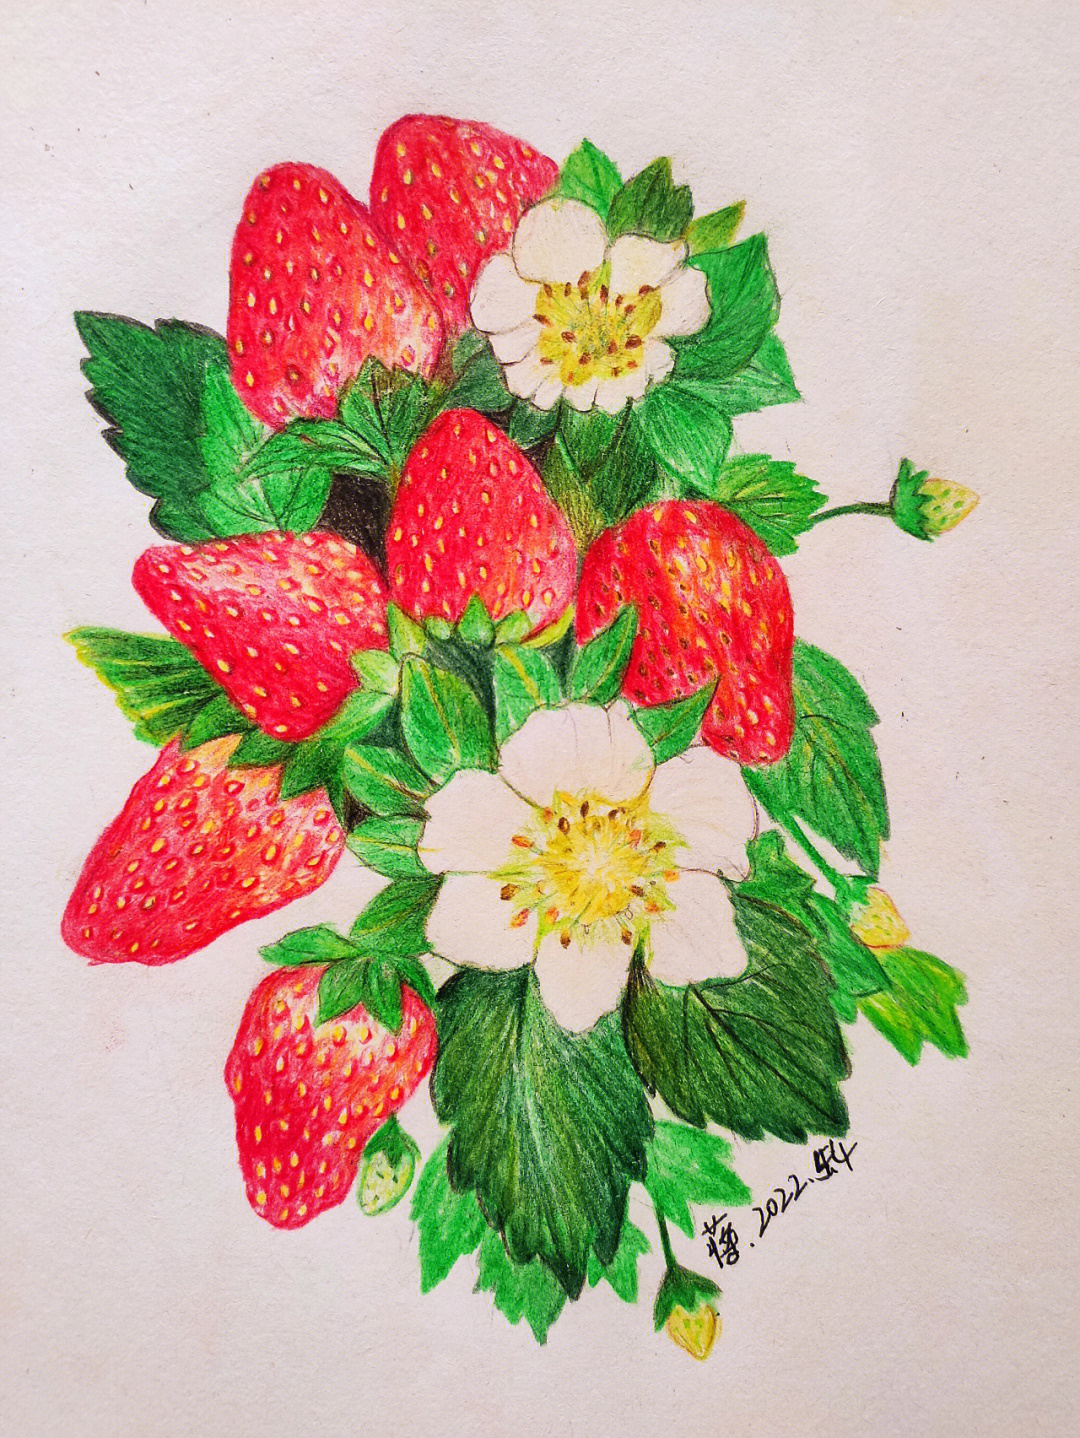 彩铅画草莓步骤图片